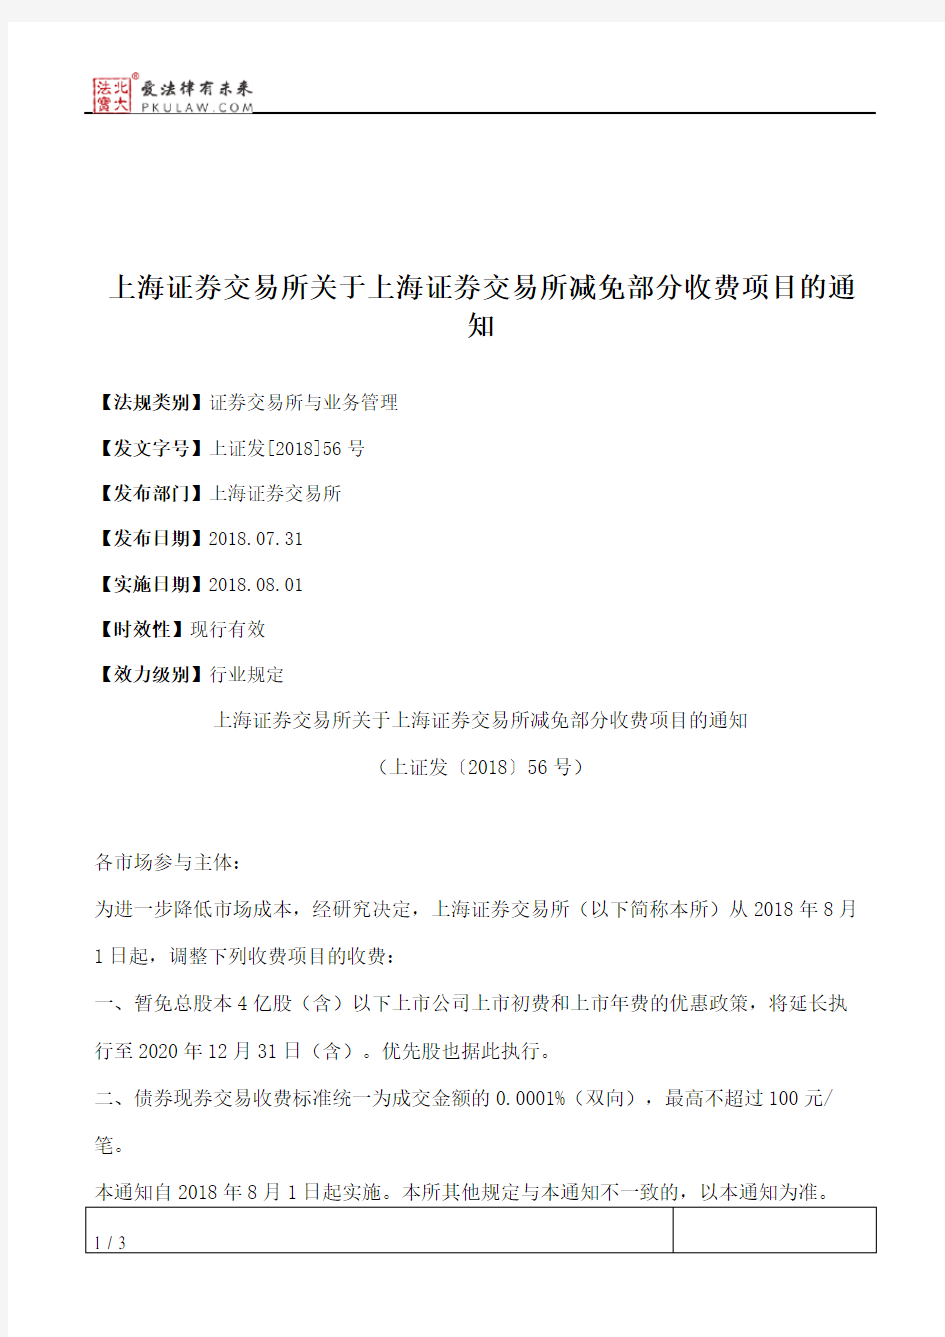 上海证券交易所关于上海证券交易所减免部分收费项目的通知